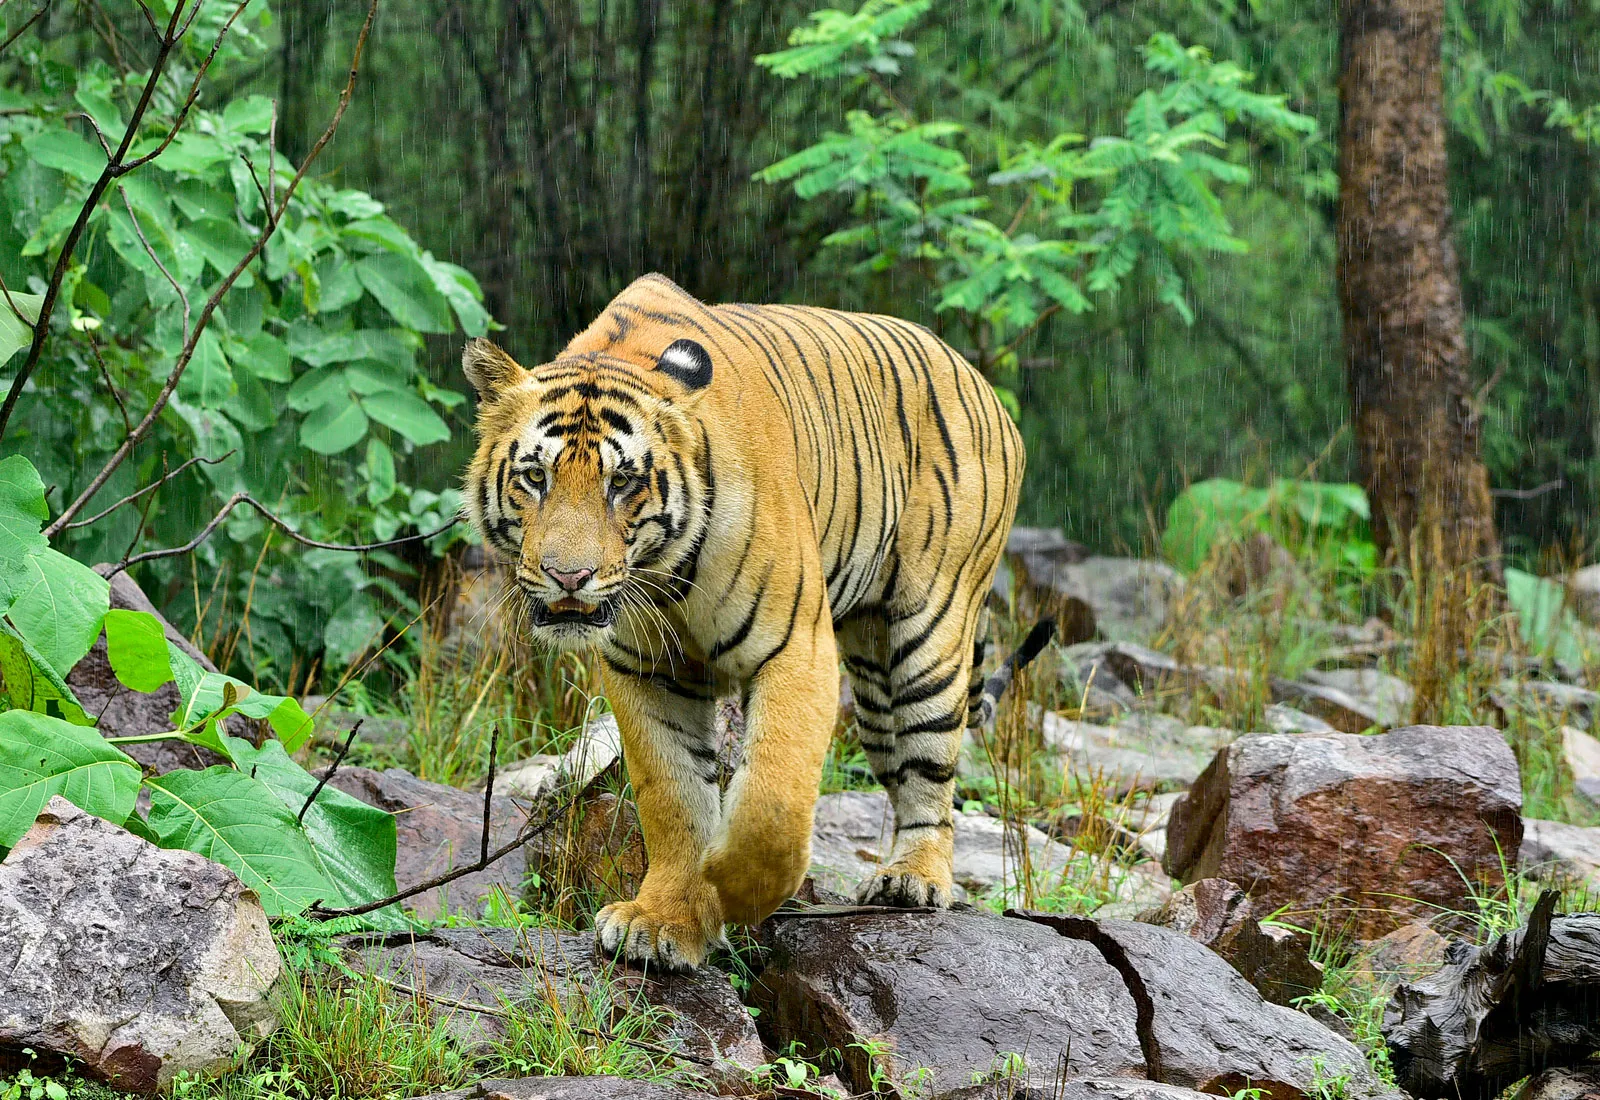 Do cơ thể nặng nề, hổ không leo cây giỏi như báo hoa mai hay báo săn… (Ảnh minh họa: Brantanicca).